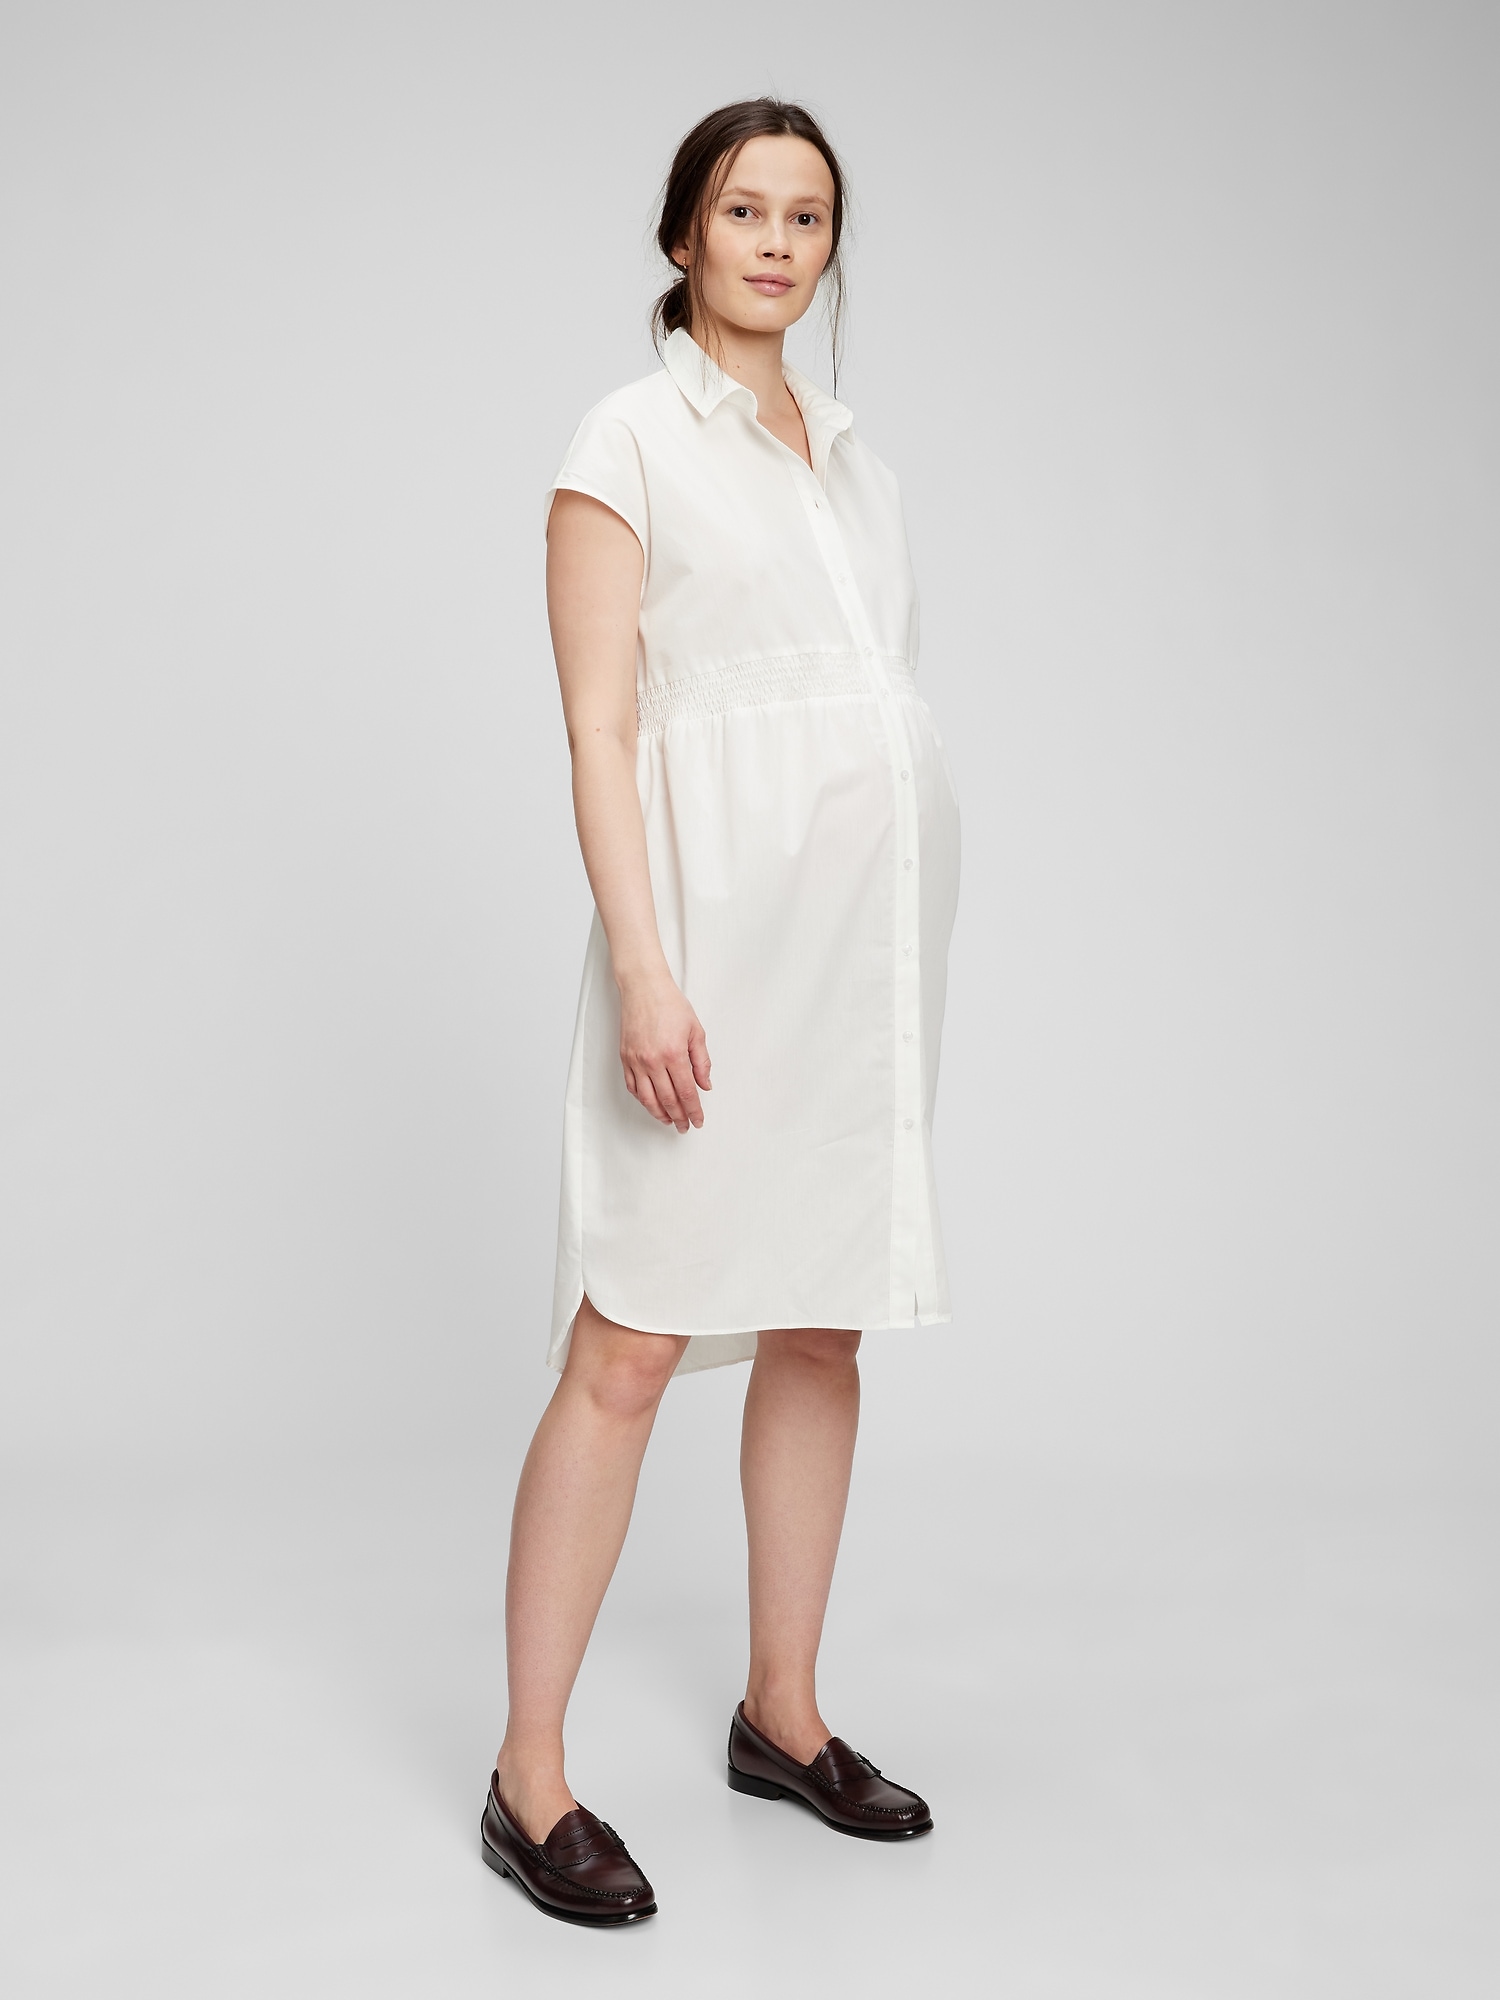 Maternity Dresses for Pregnant Women